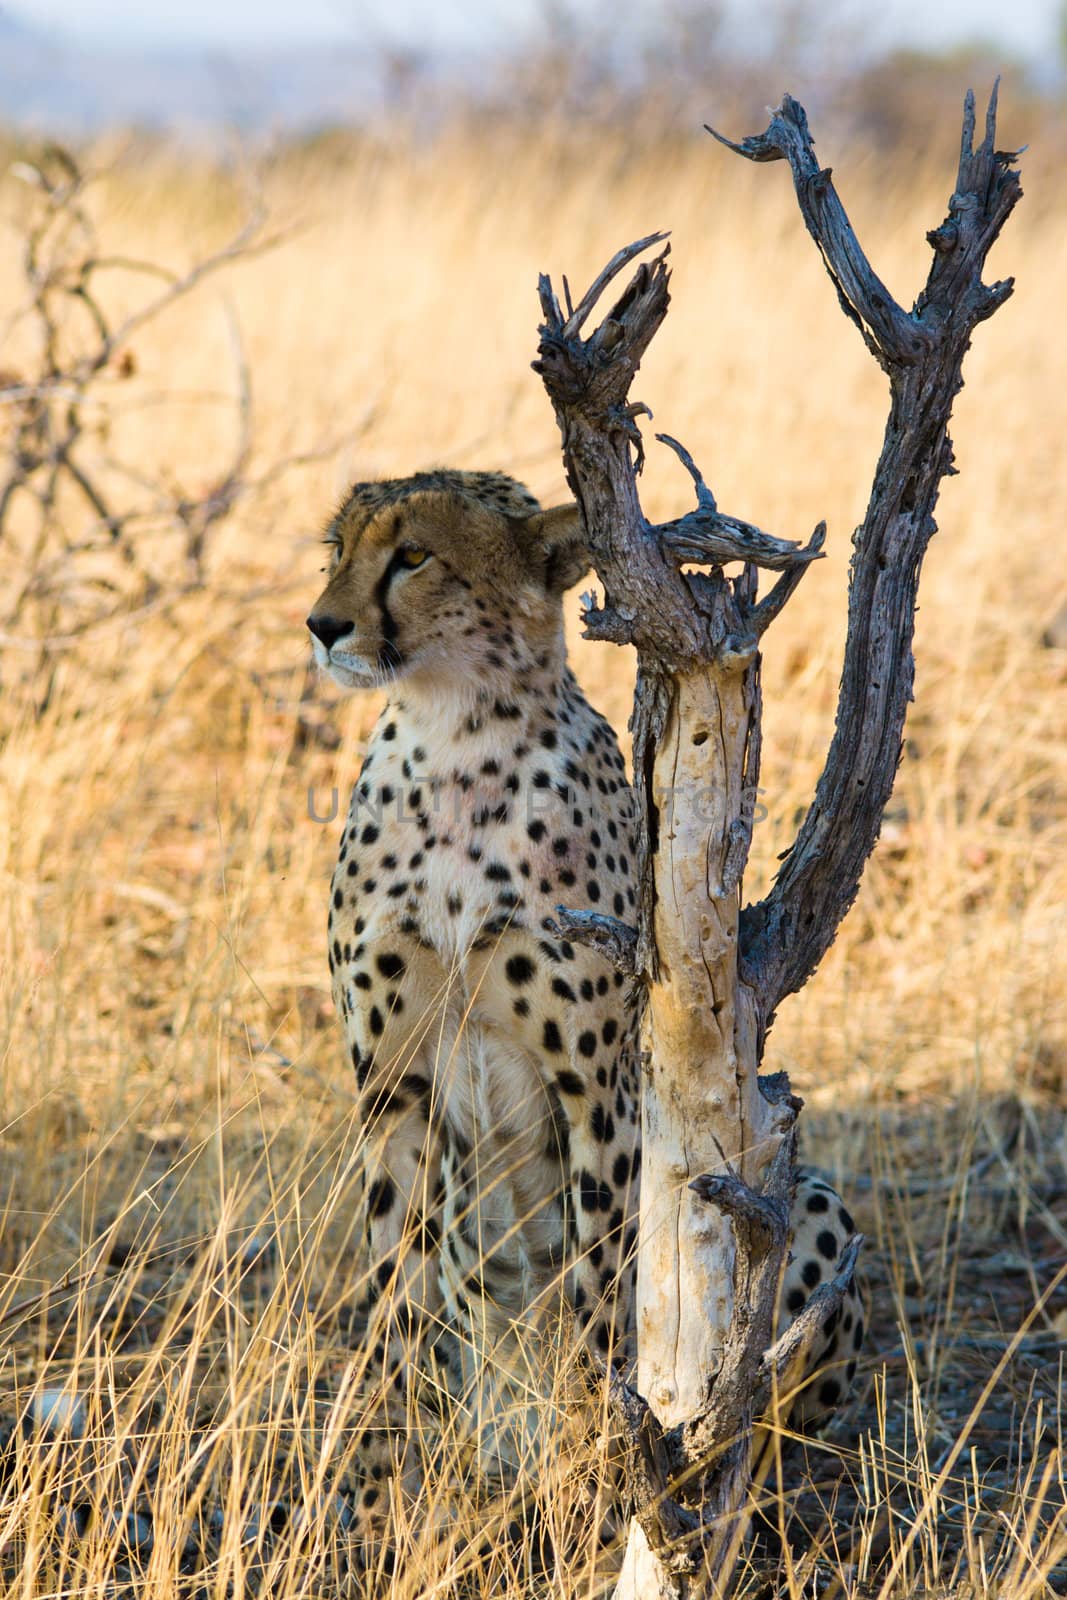 Cheetah On Alert by TerryStraehley